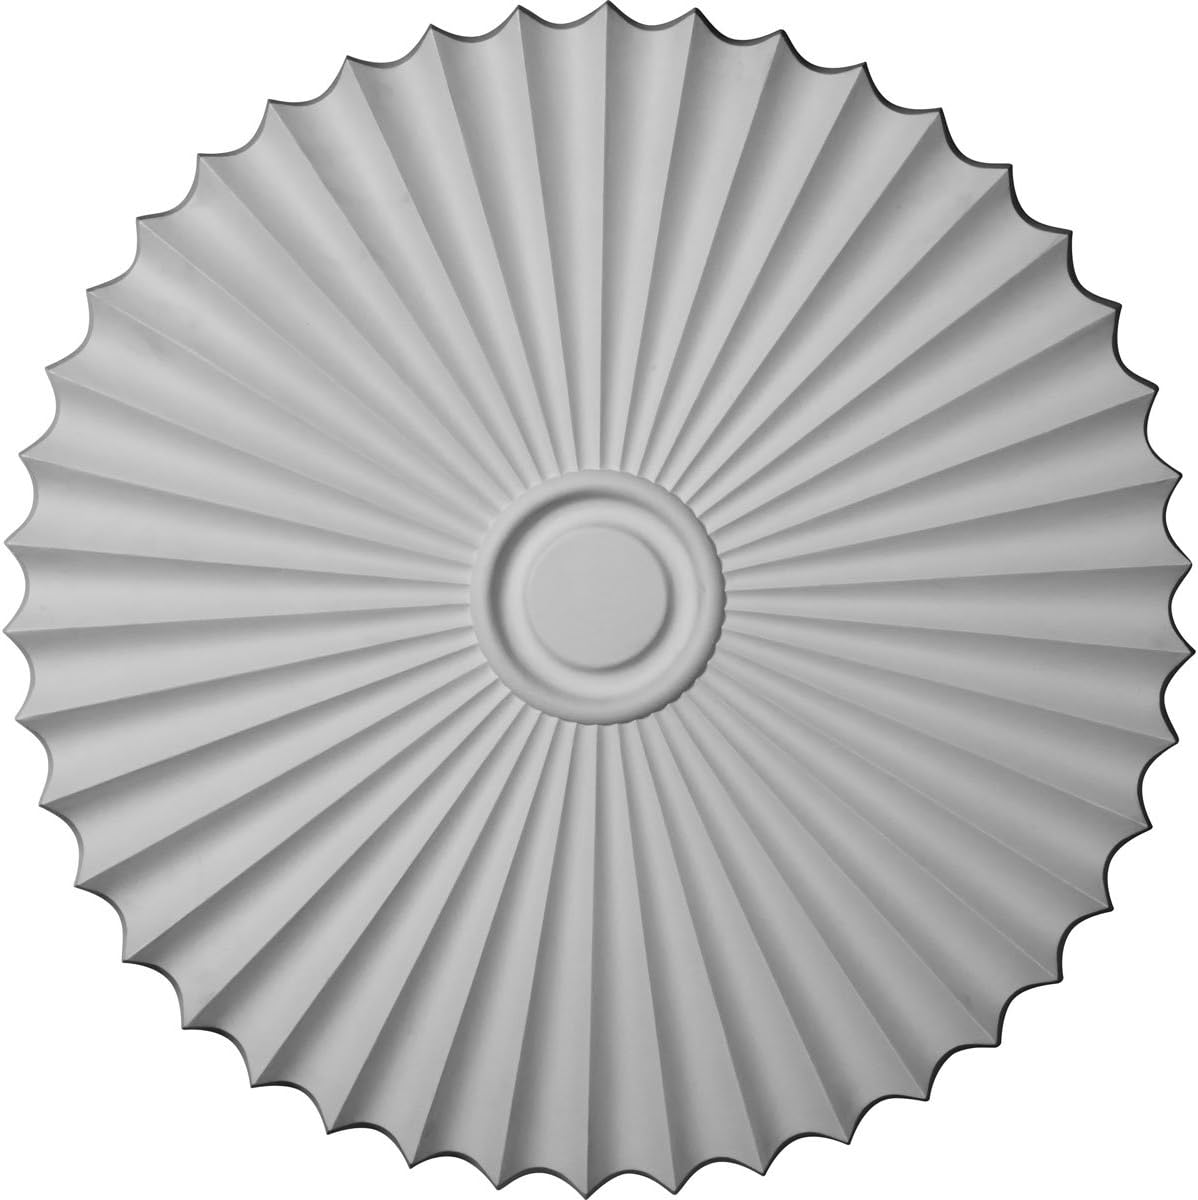 Ekena Millwork CM34SH Shakuras Ceiling Medallion, 33 7/8"OD x 2"P (For Canopies up to 5 3/4"), Primed White